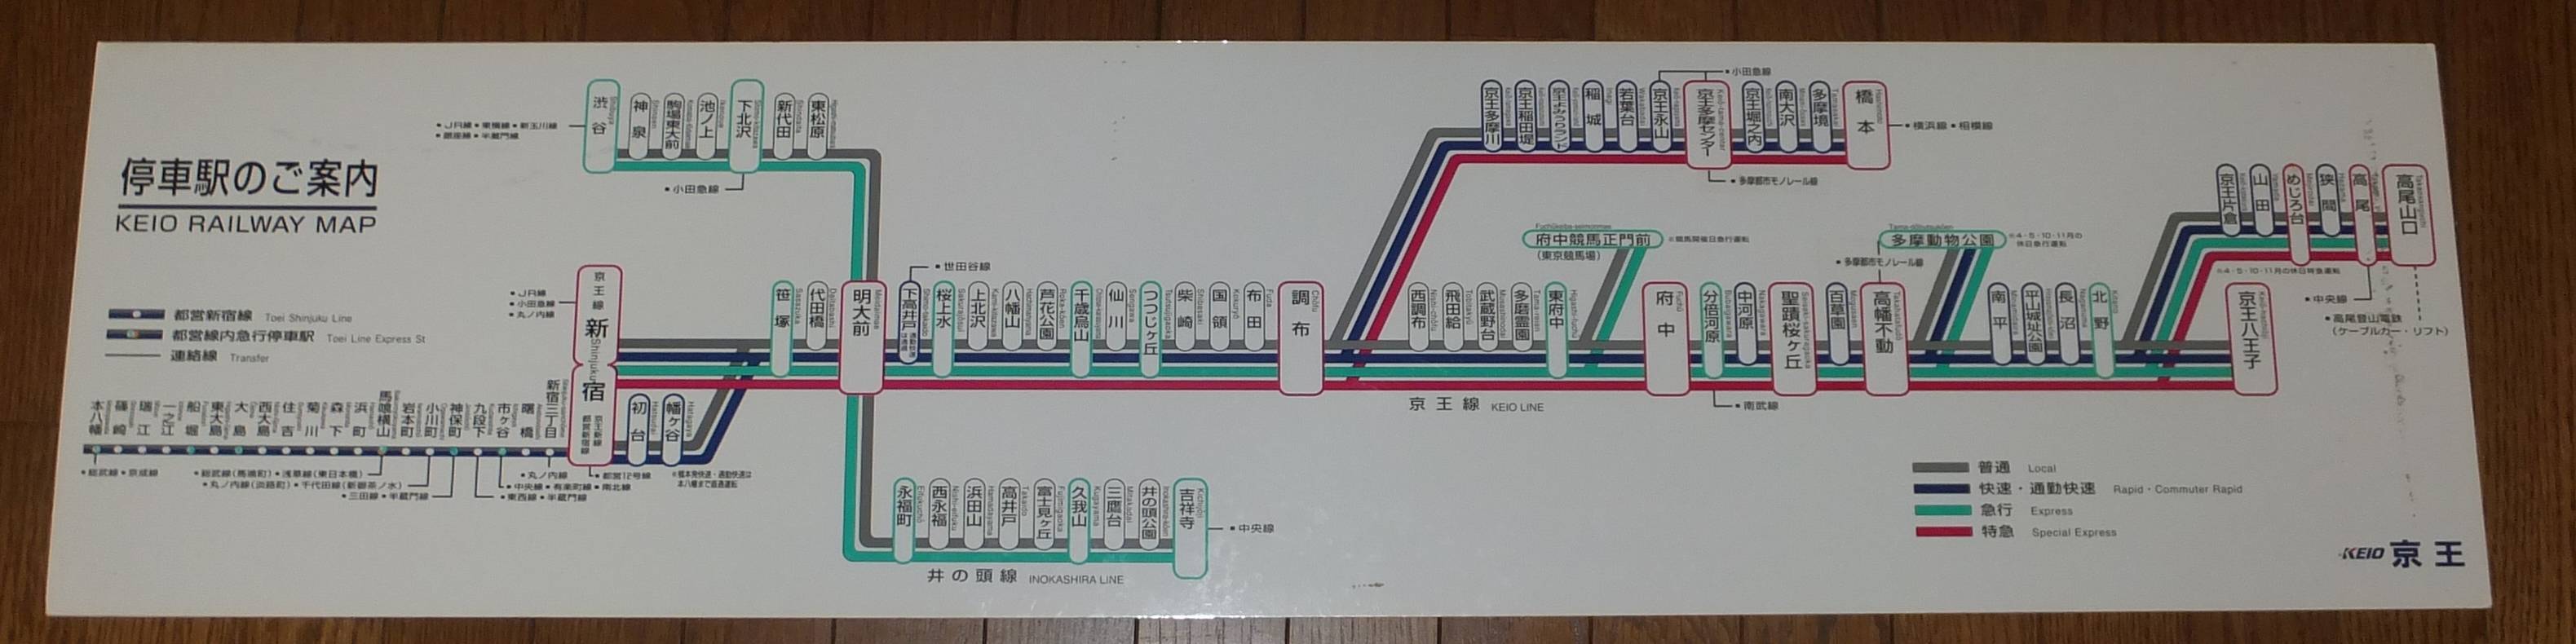 路線図の変遷 京王電鉄 年10月28日追記 画像追加 Icoca飼いました